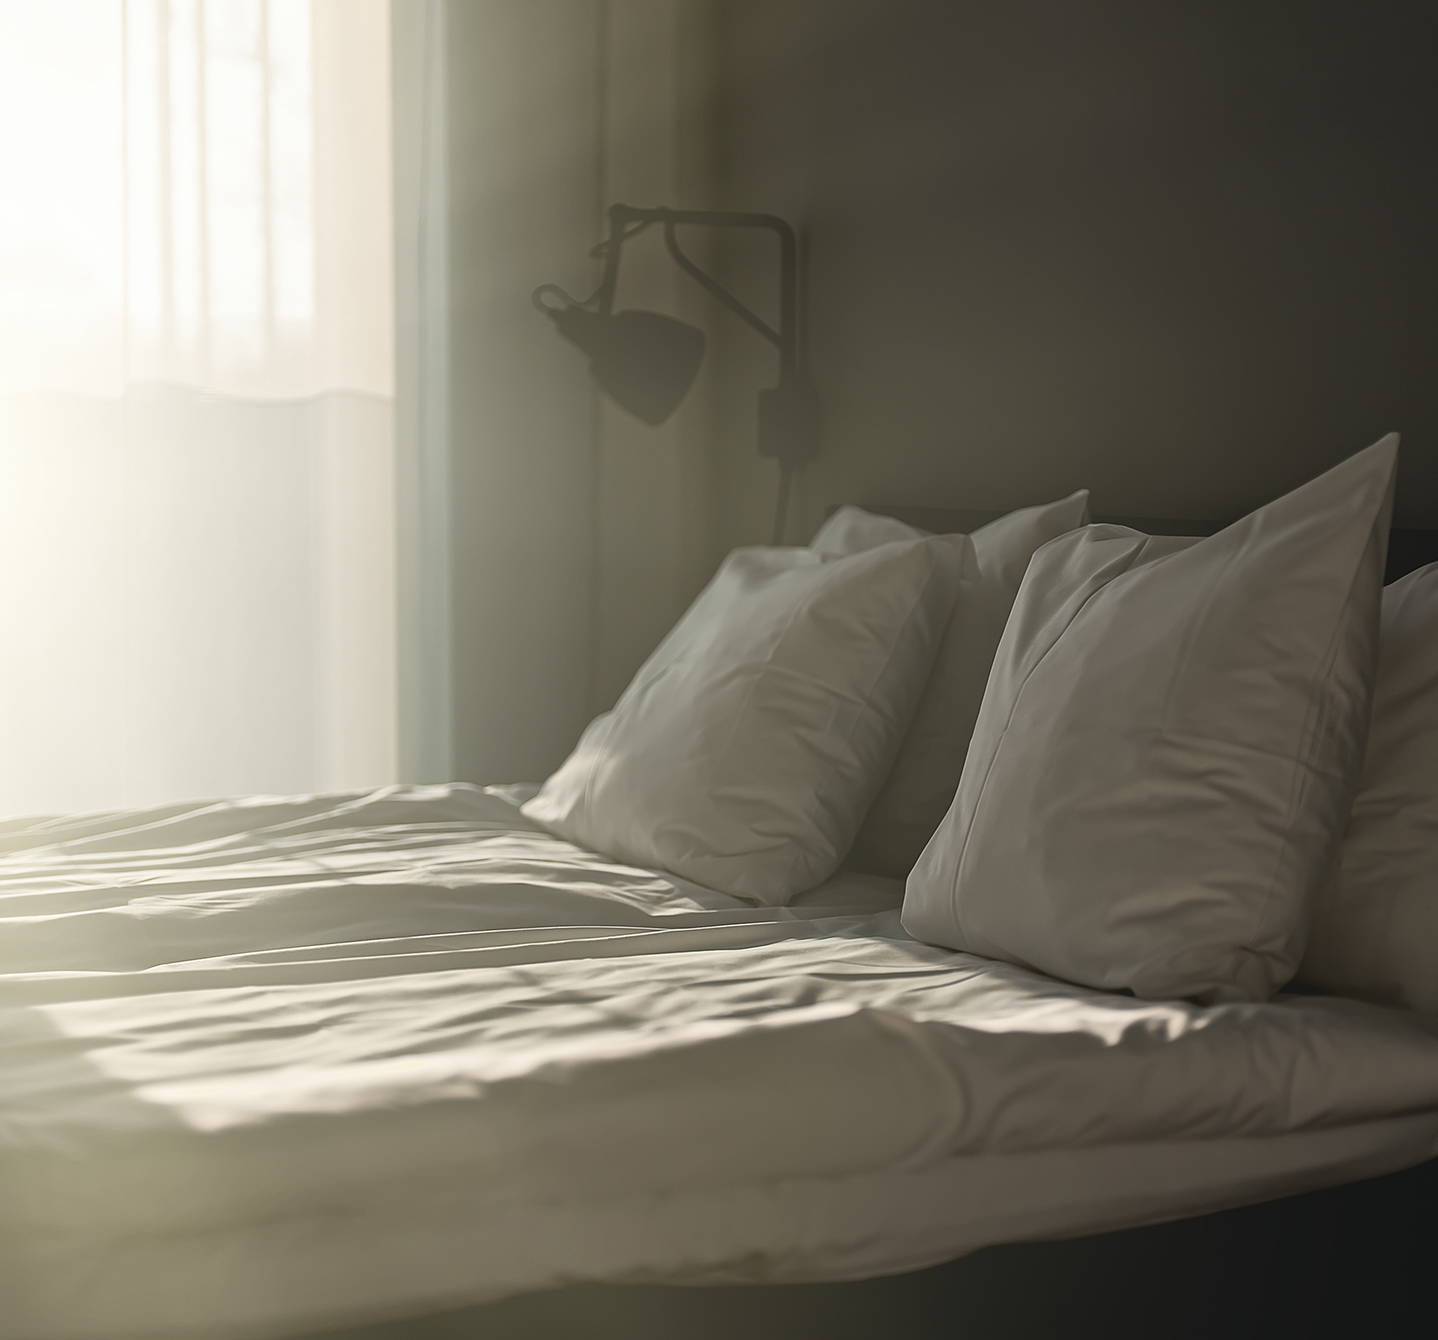 Hausstaubmilben im Vergleich zu Bettwanzen: Beide sind störend und beide können in deinem Bett auftauchen. Aber welche der beiden verursachen Allergiesymptome?